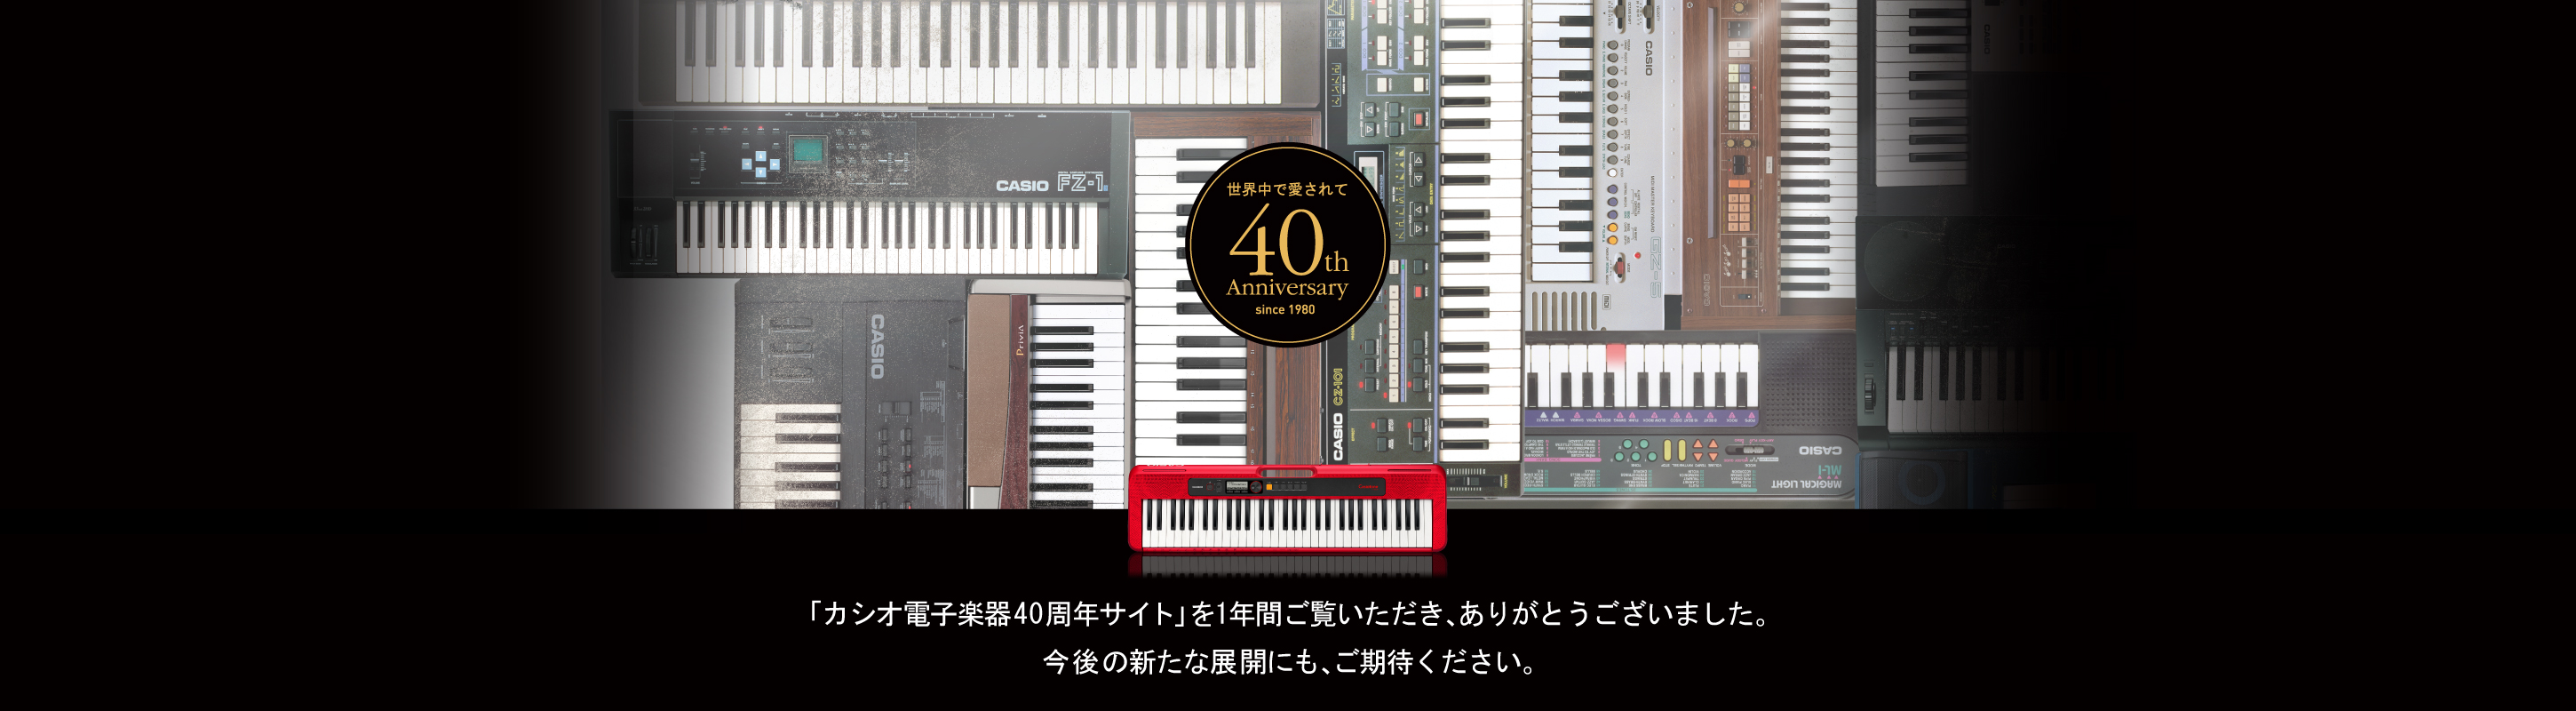 １年間、「カシオ電子楽器40周年サイト」をご覧いただき、ありがとうございました。これからの未来も「すべての人に、音楽の楽しさを」提供していくカシオ電子楽器の取り組みにご期待ください。